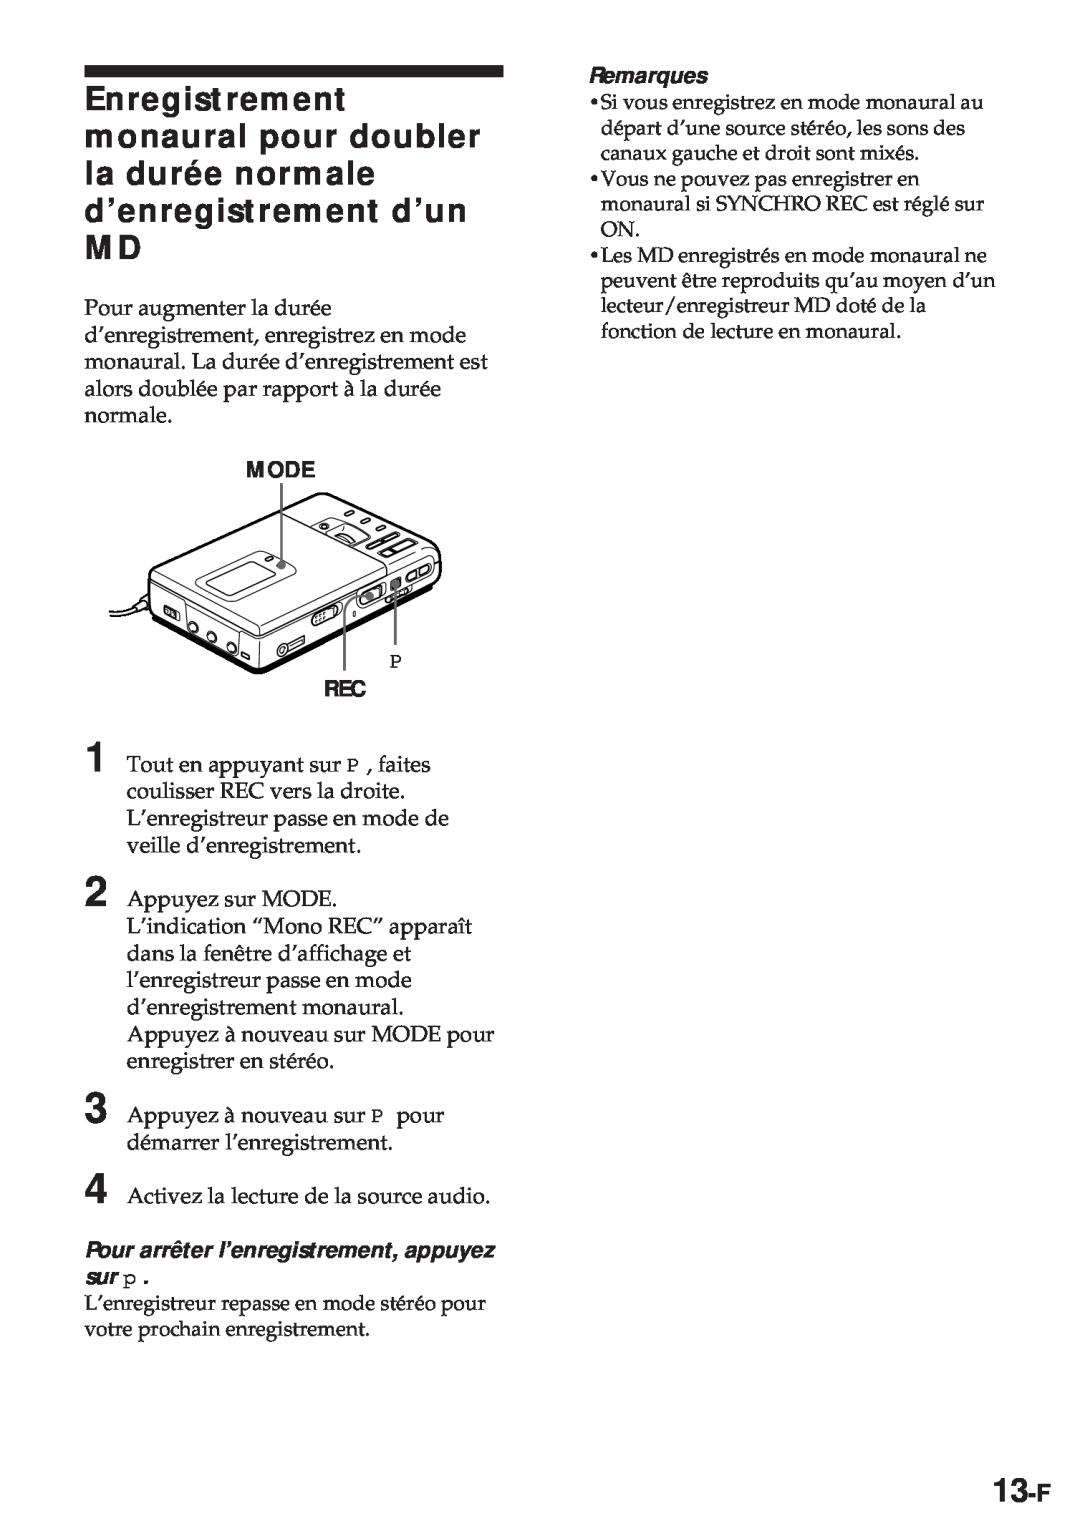 Sony MZ-R30 operating instructions 13-F, Mode, Pour arrêter l’enregistrement, appuyez sur p, Remarques 